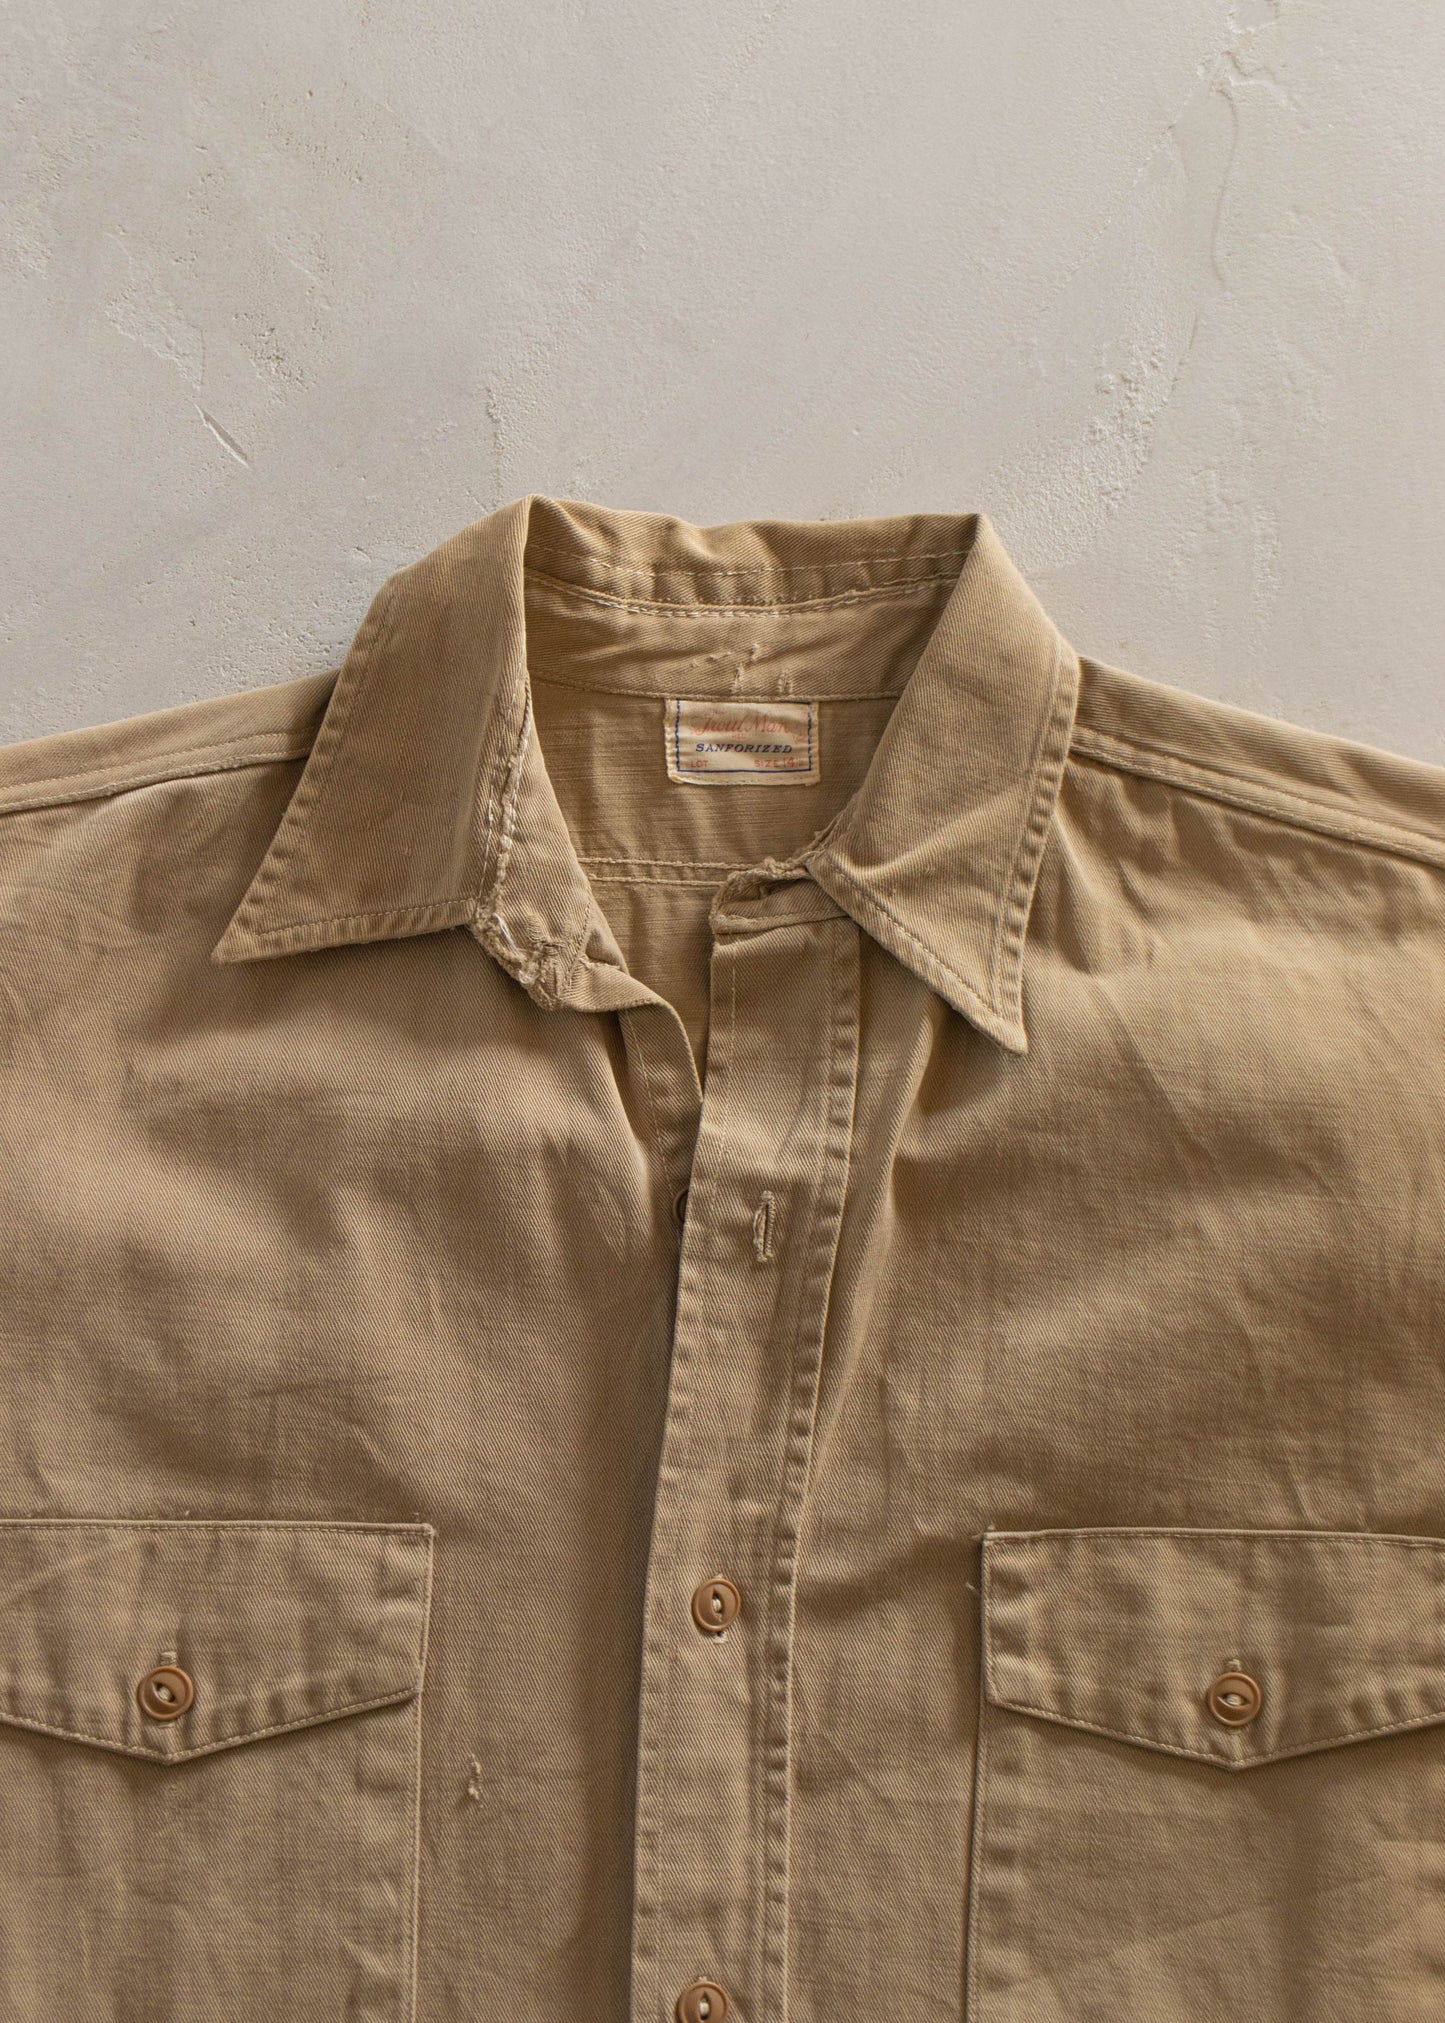 1950s Trout Man Button Up Shirt Size S/M